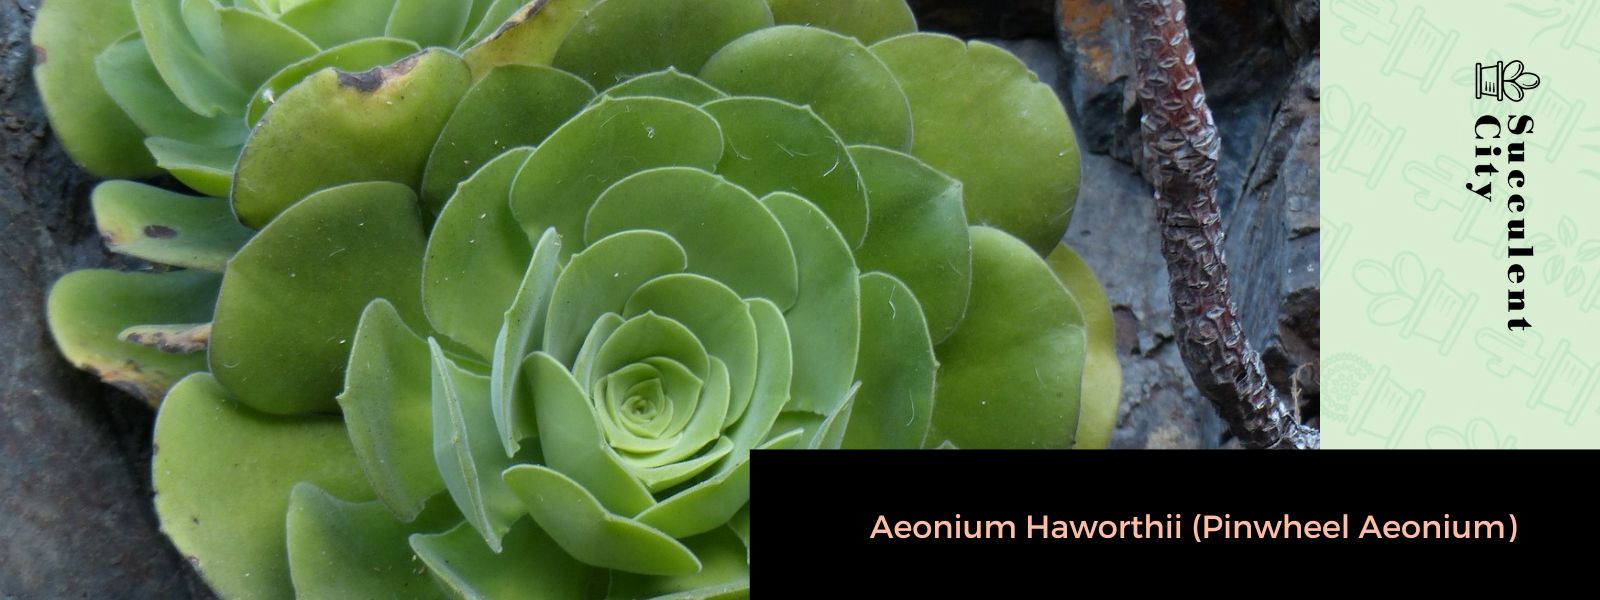 Aeonium Haworthii (Aeonium molinete)